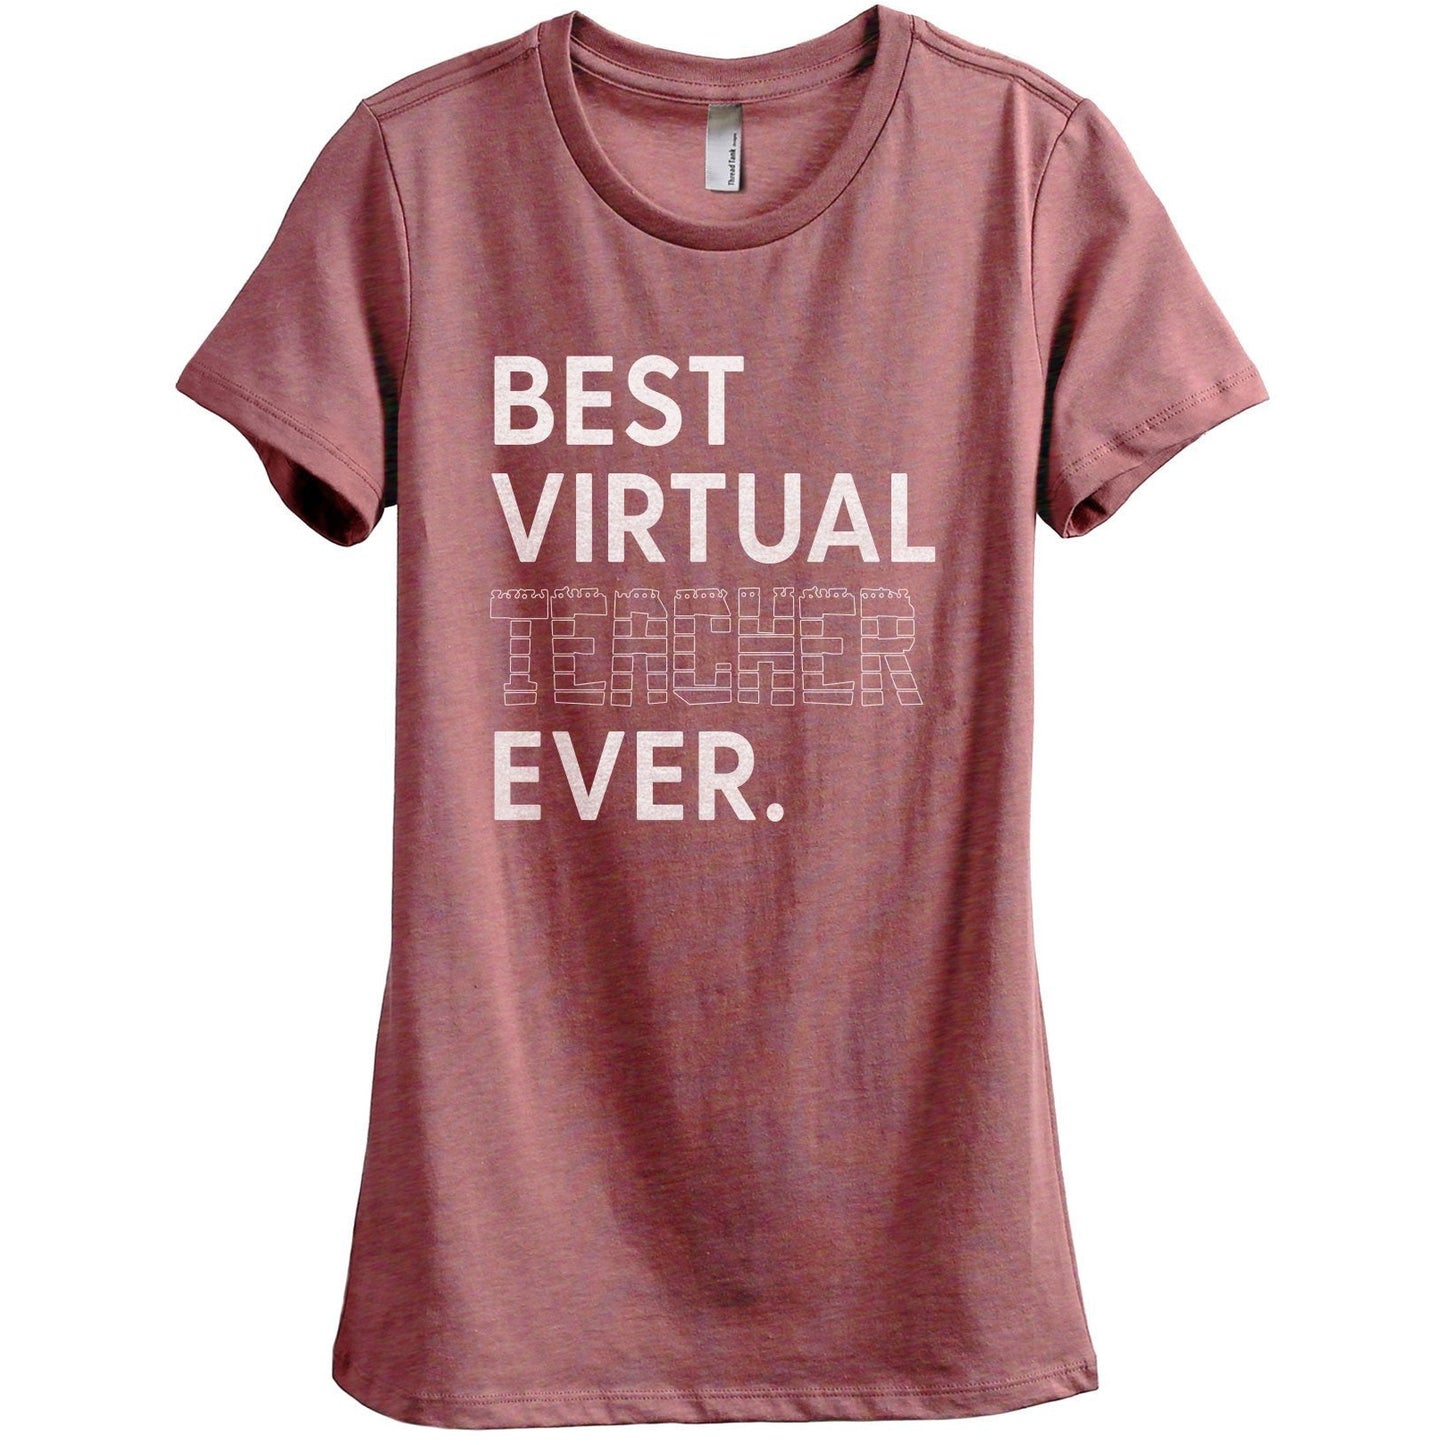 Best Virtual Teacher Ever Women's Relaxed Crewneck T-Shirt Top Tee Heather Rouge Grey
